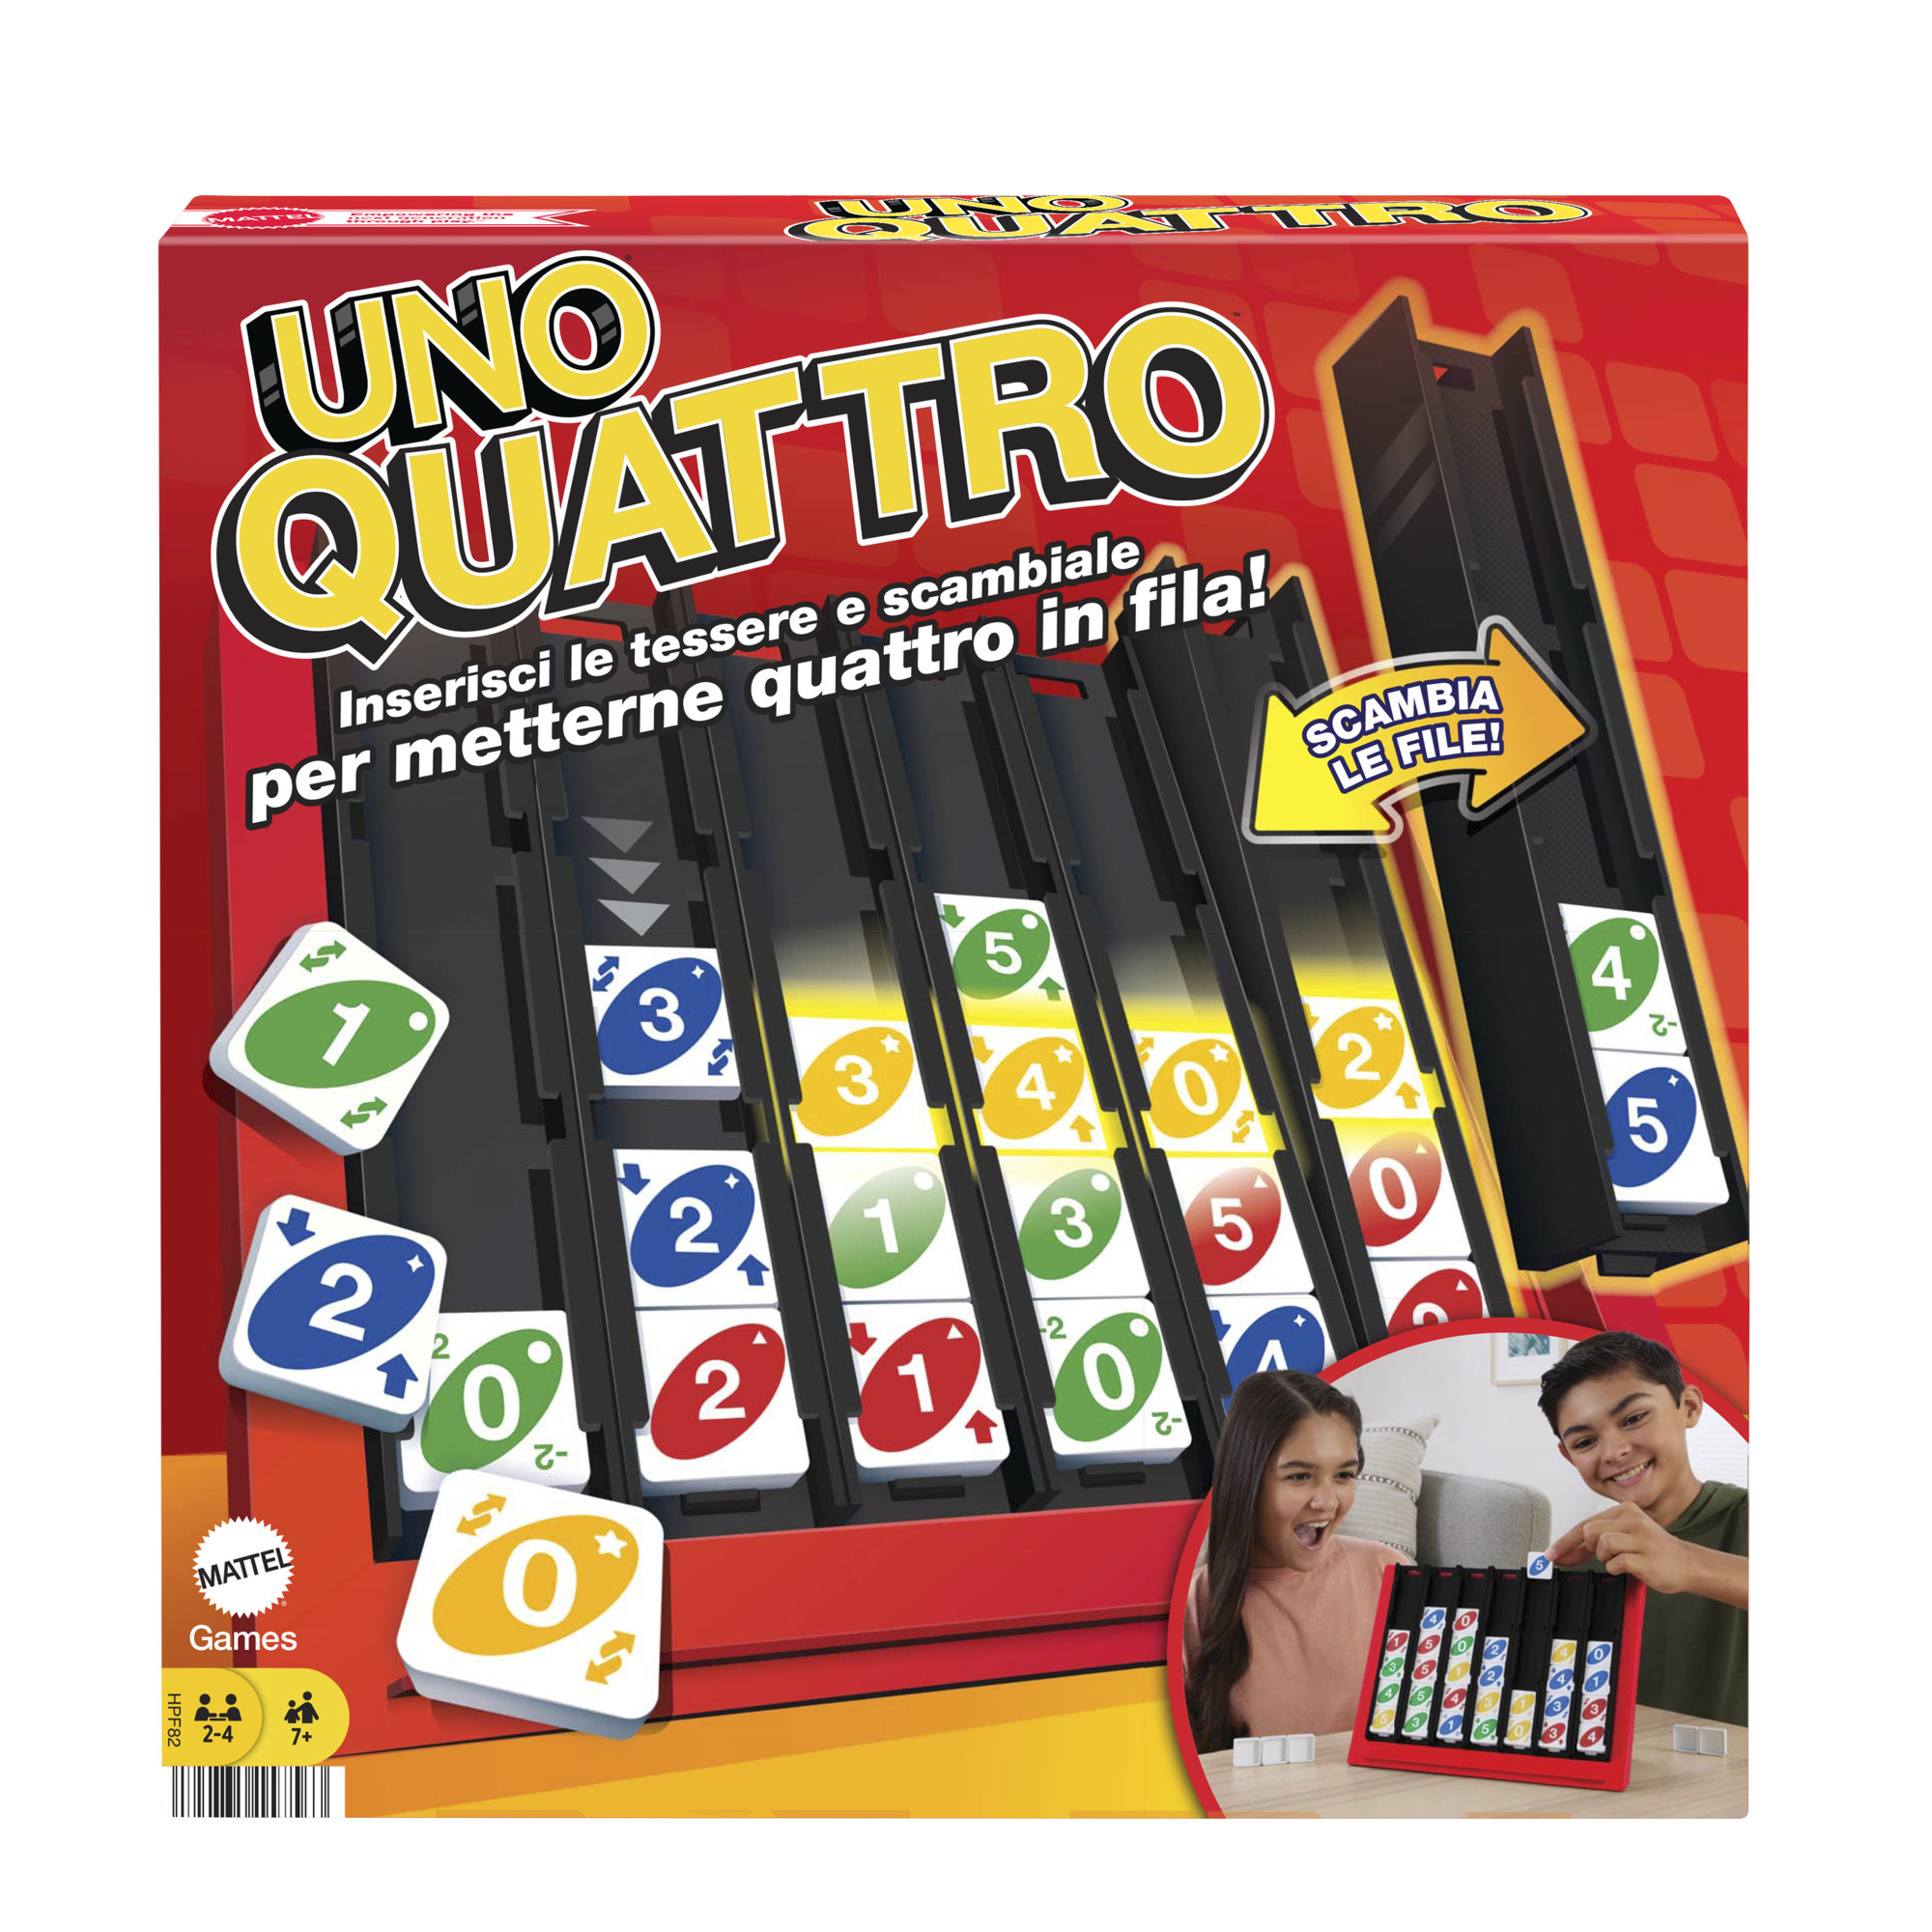 Uno quattro, posiziona quattro tessere e abbina colore e numero - MATTEL GAMES, UNO